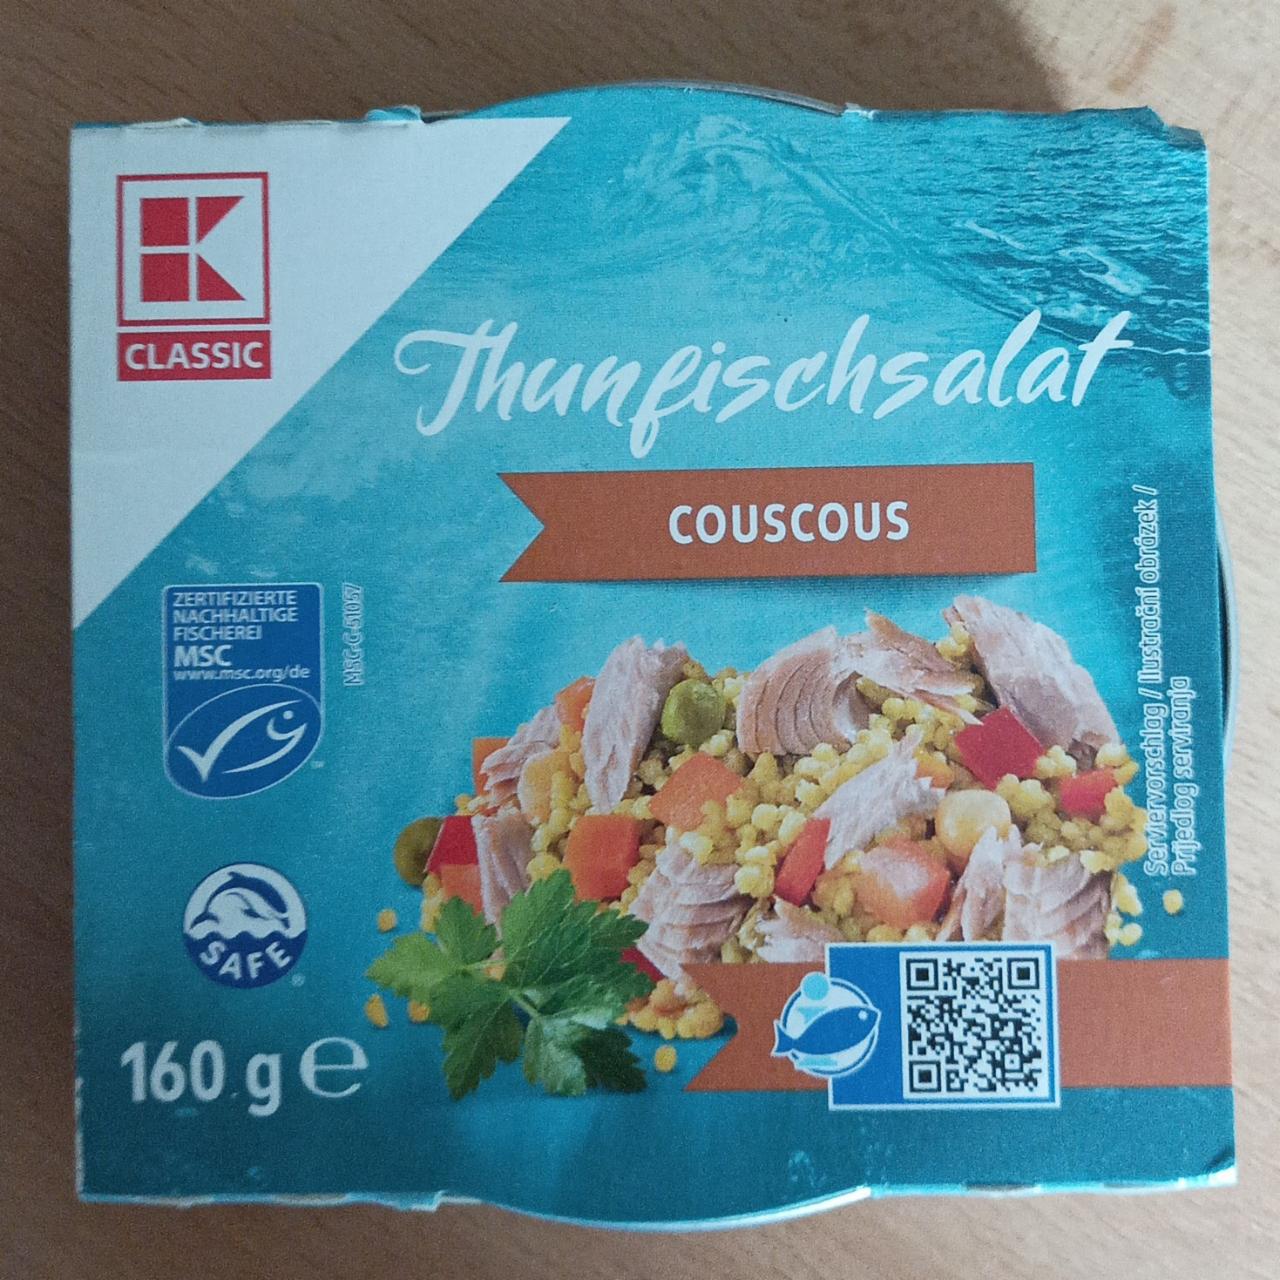 Fotografie - Thunfischsalat couscous K-Classic